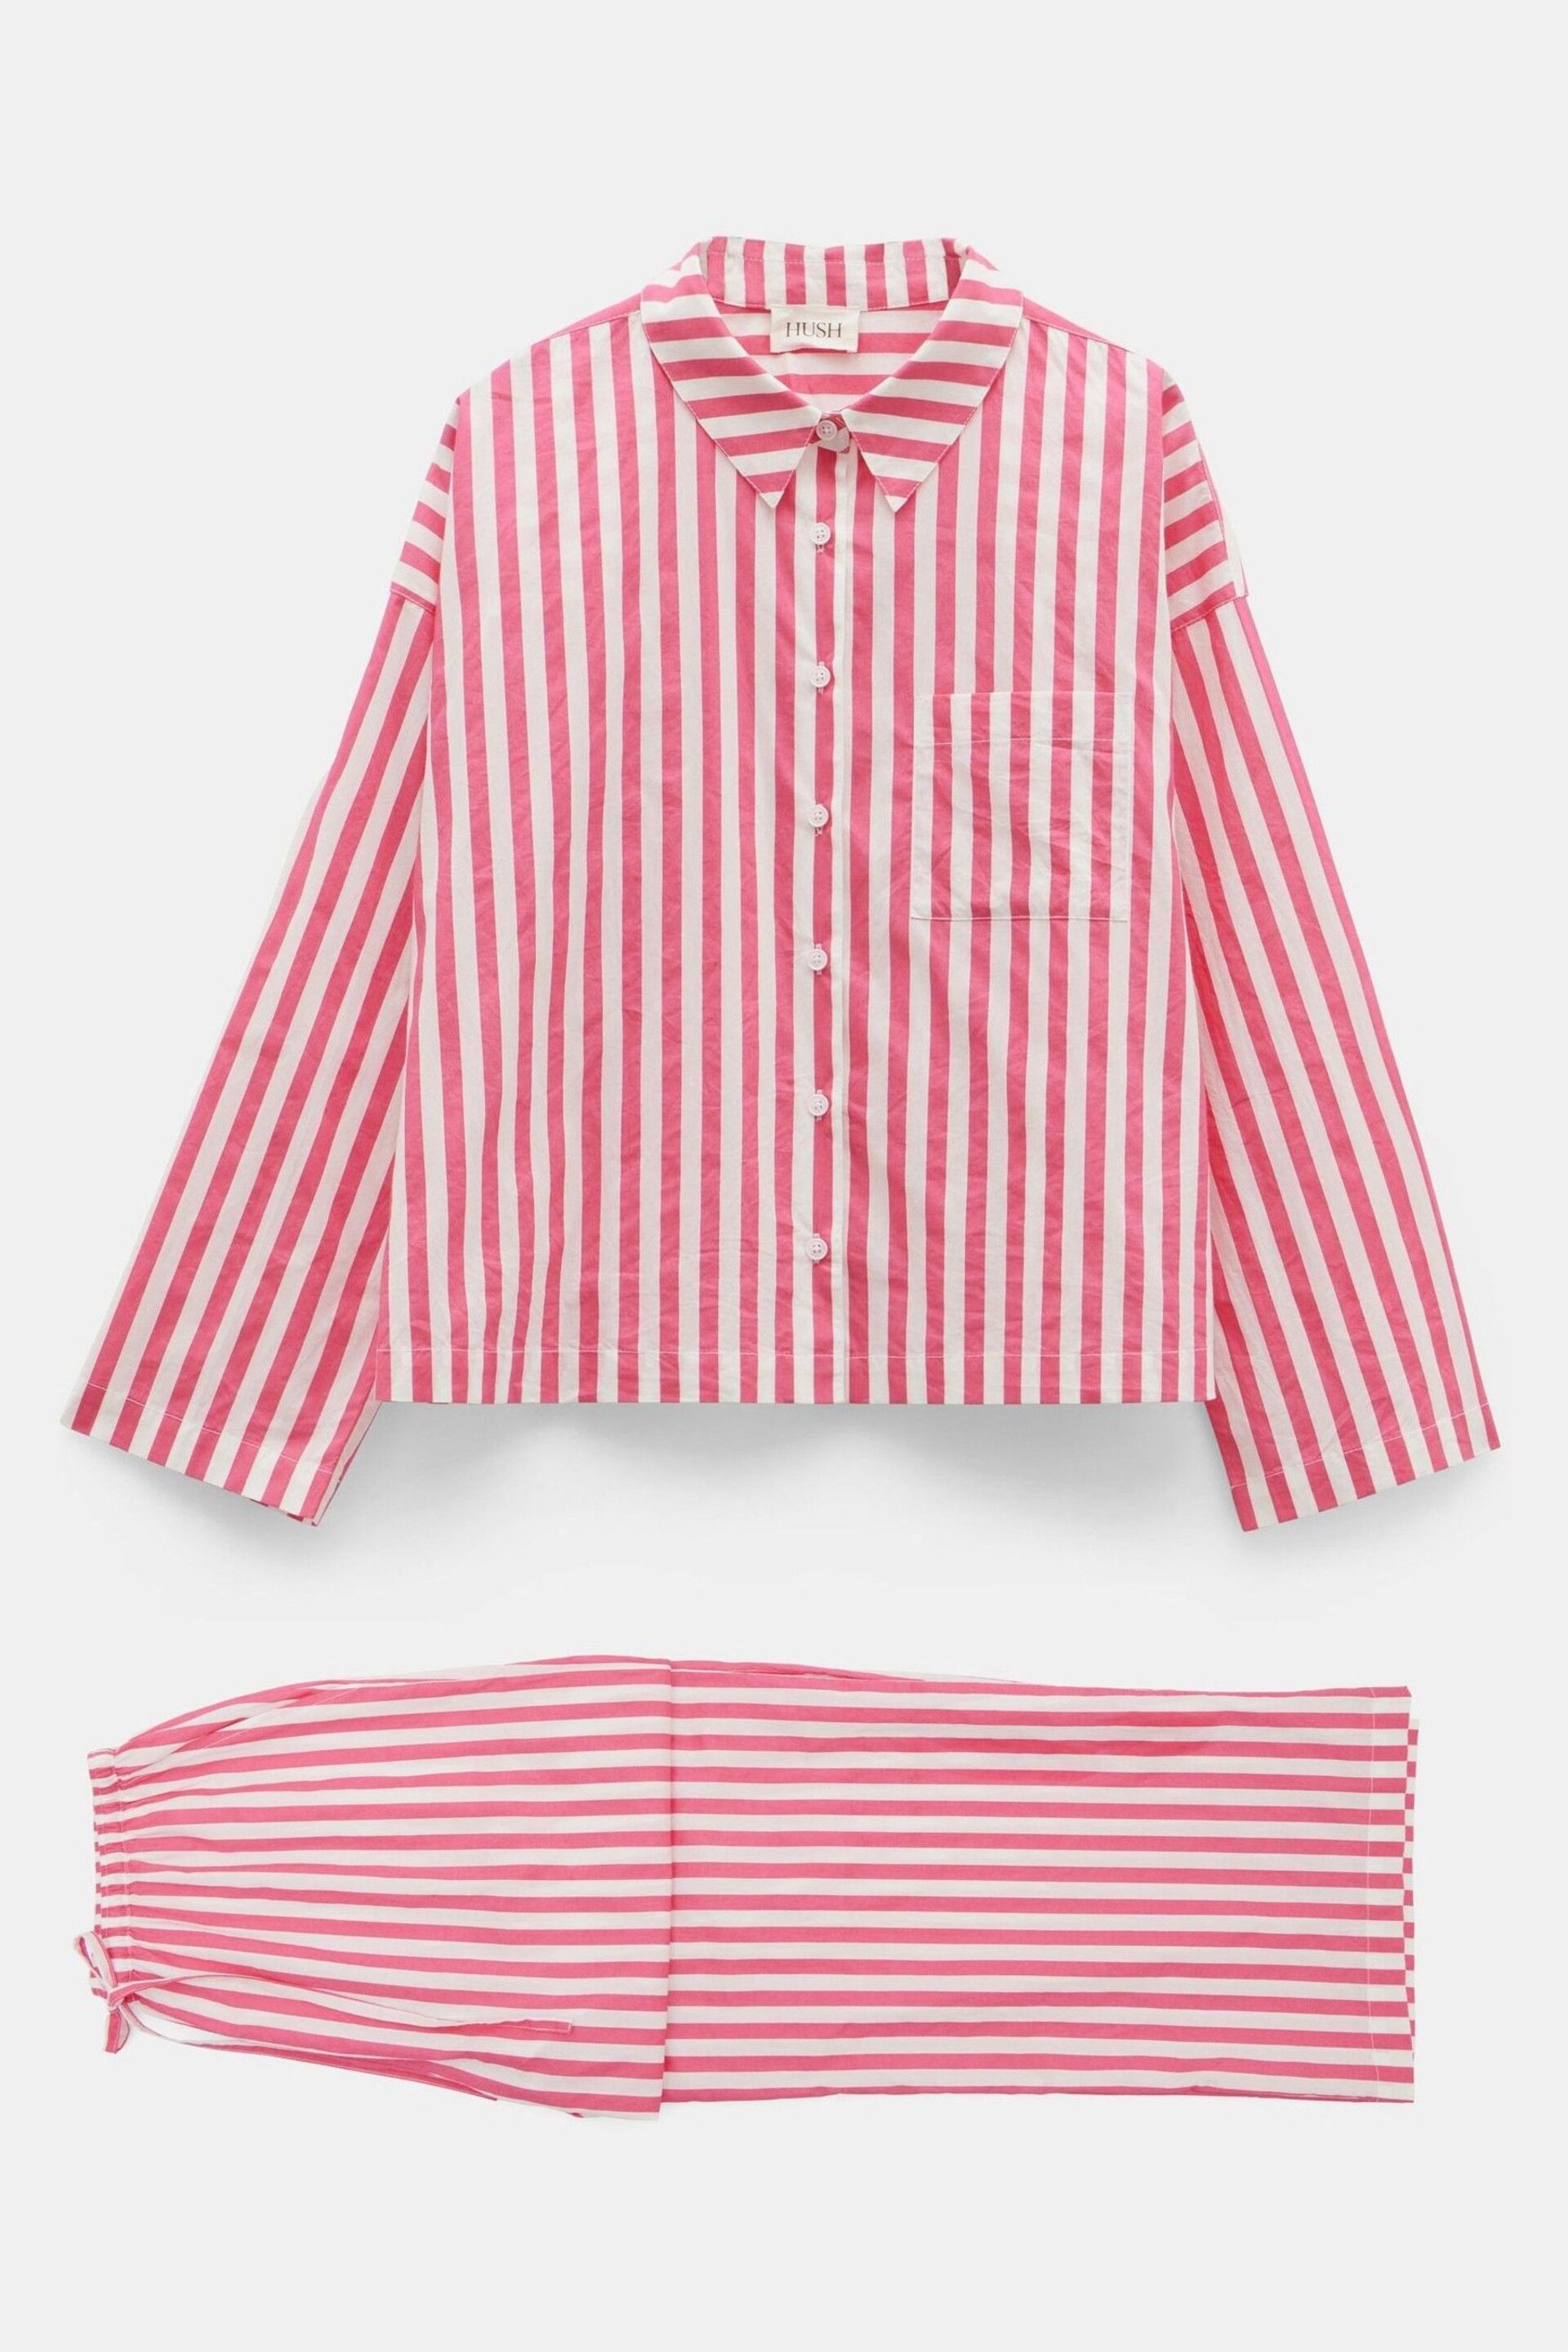 Hush Pink Emerson Boxy Fit Shirt Pyjamas Set - Image 5 of 5